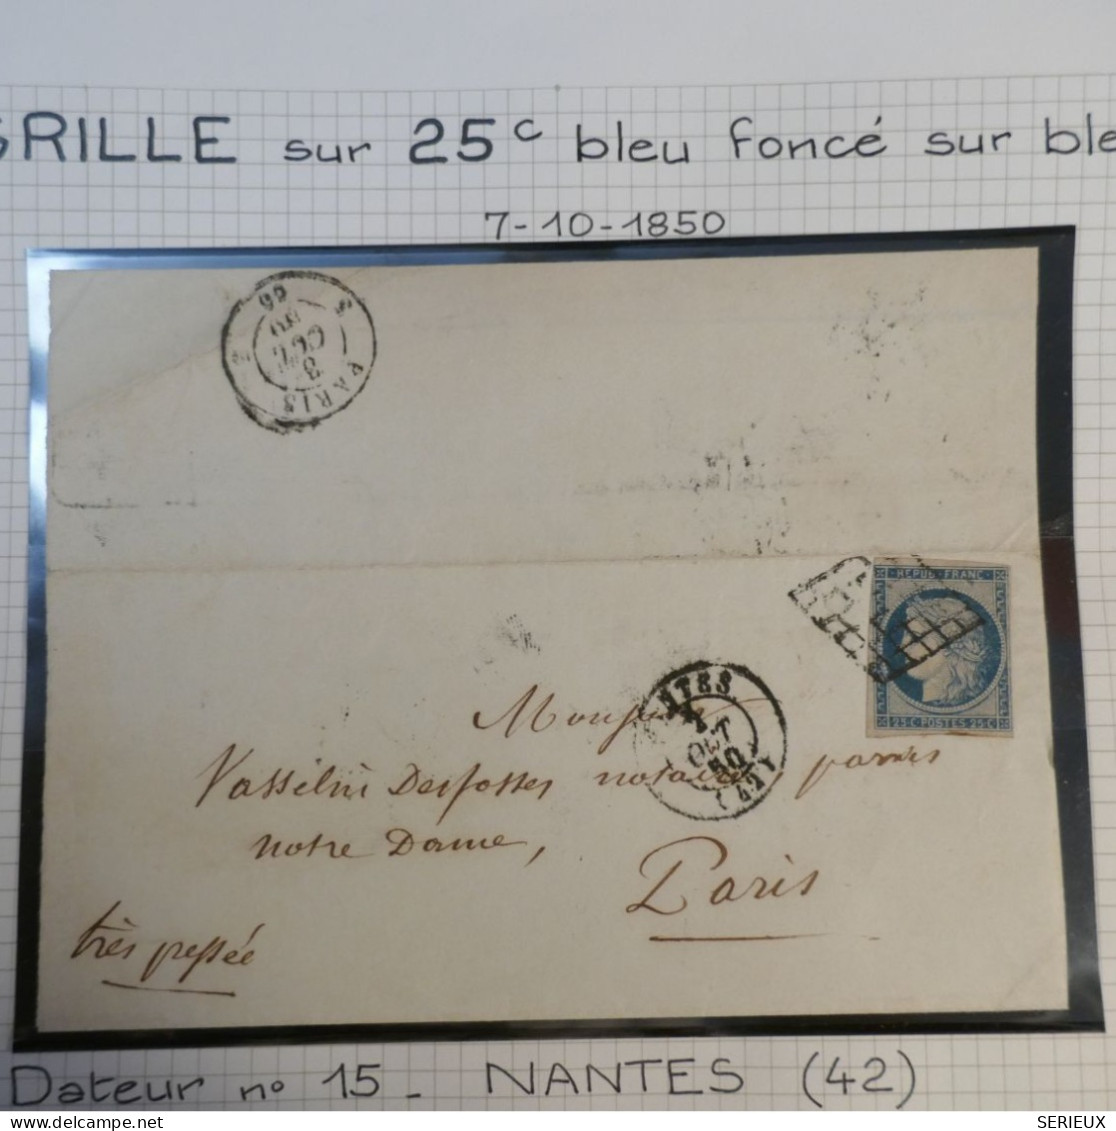 DK3 FRANCE  BELLE LETTRE RARE  7 10. 1850  NANTES A NOTRE DAME  PARIS+ N°4 FONCé + OB. GRILLE +DISPERSION DE COLLECTION+ - 1849-1876: Classic Period